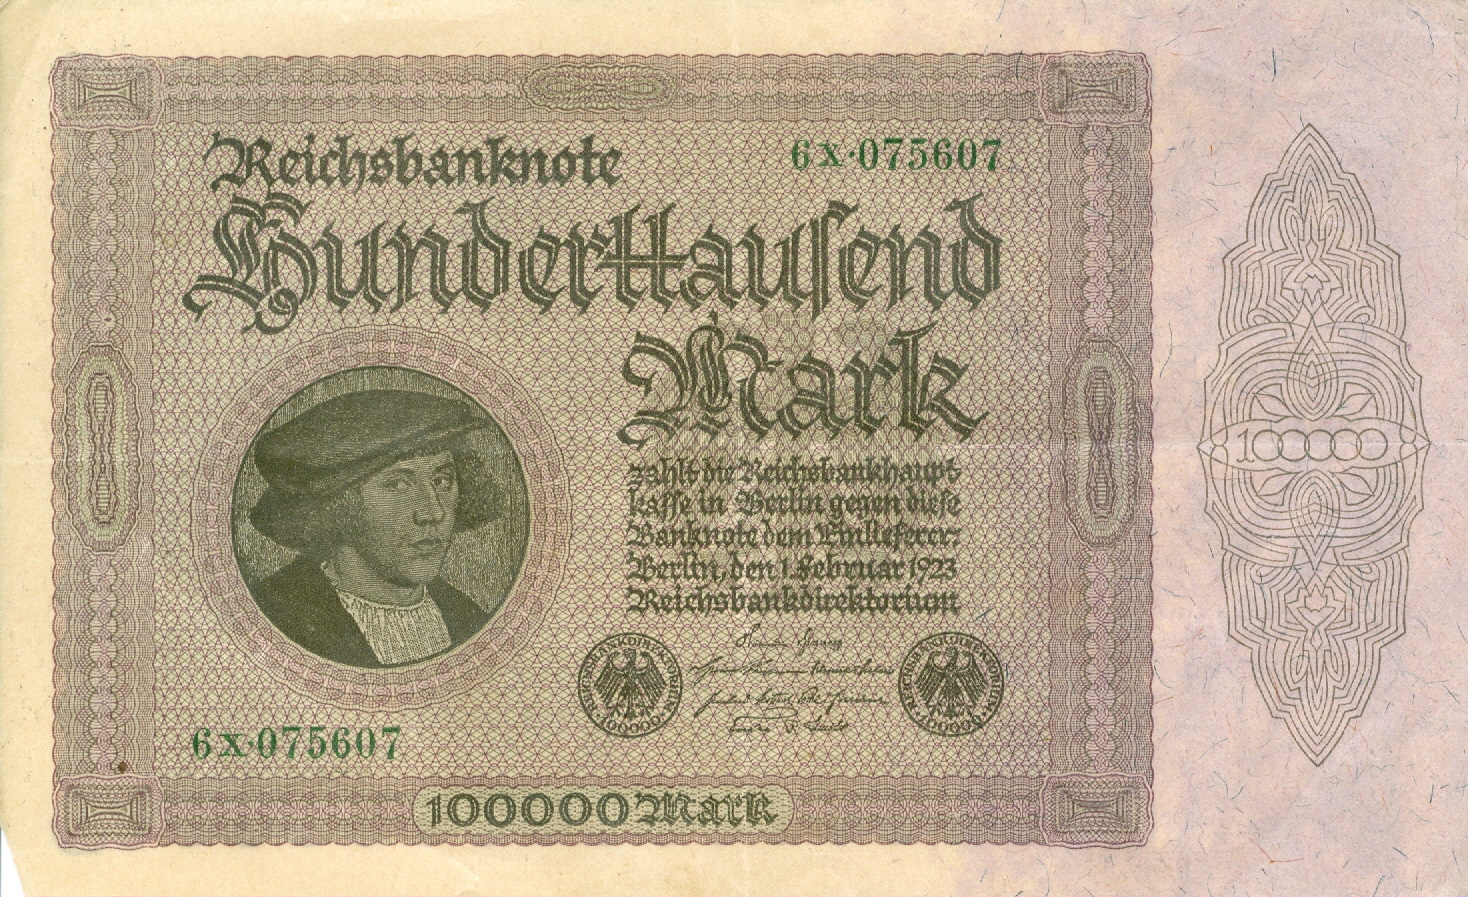 german note